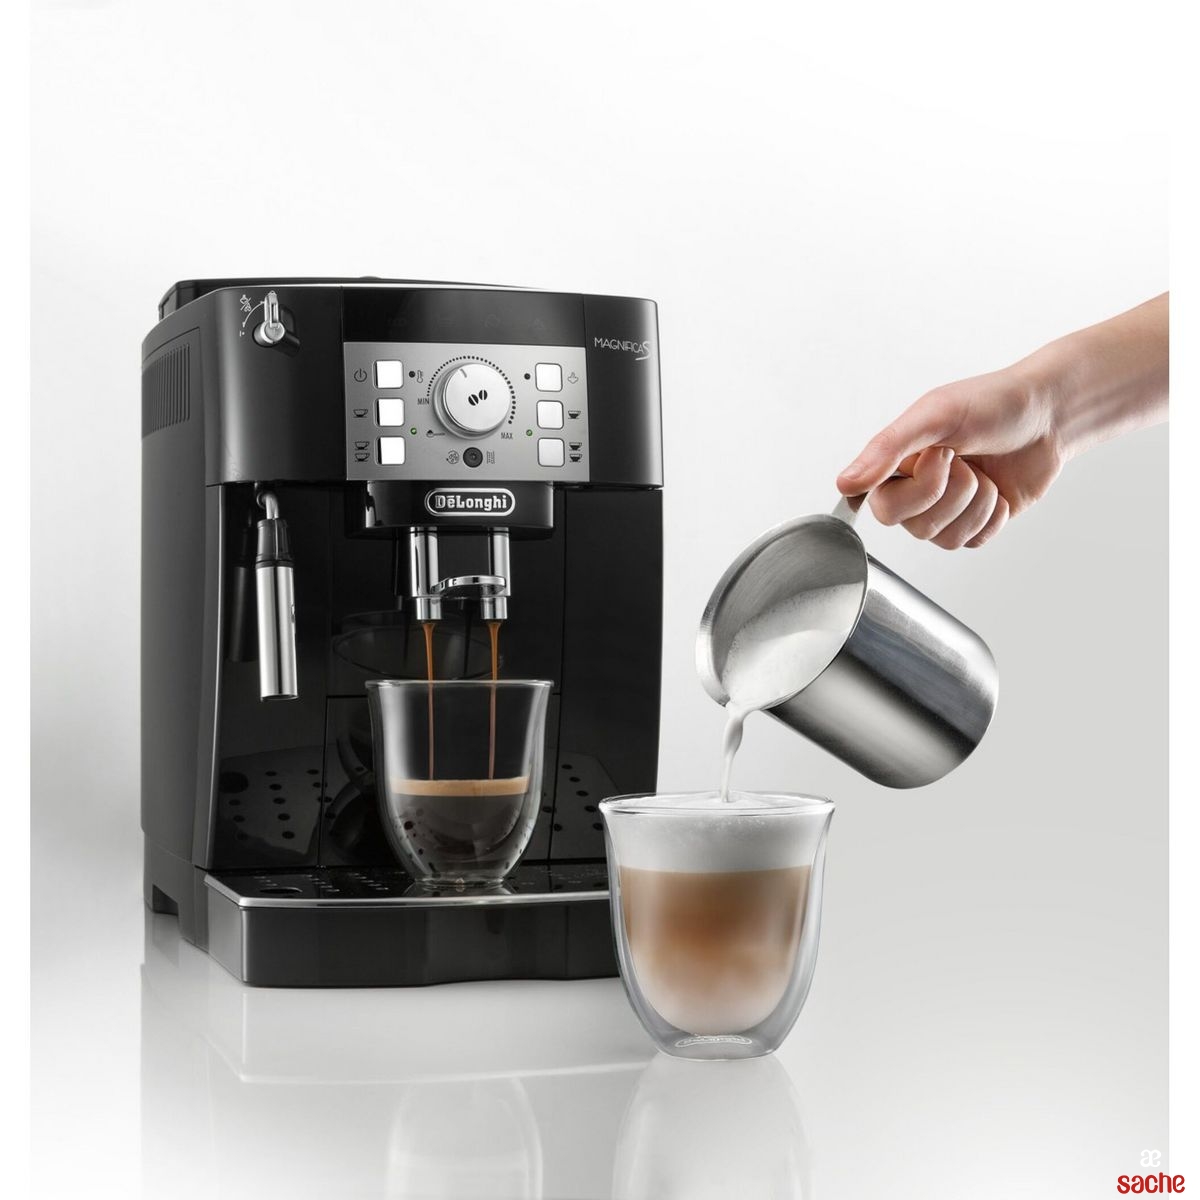 Machine à café à grains DeLonghi pour une tasse de café en